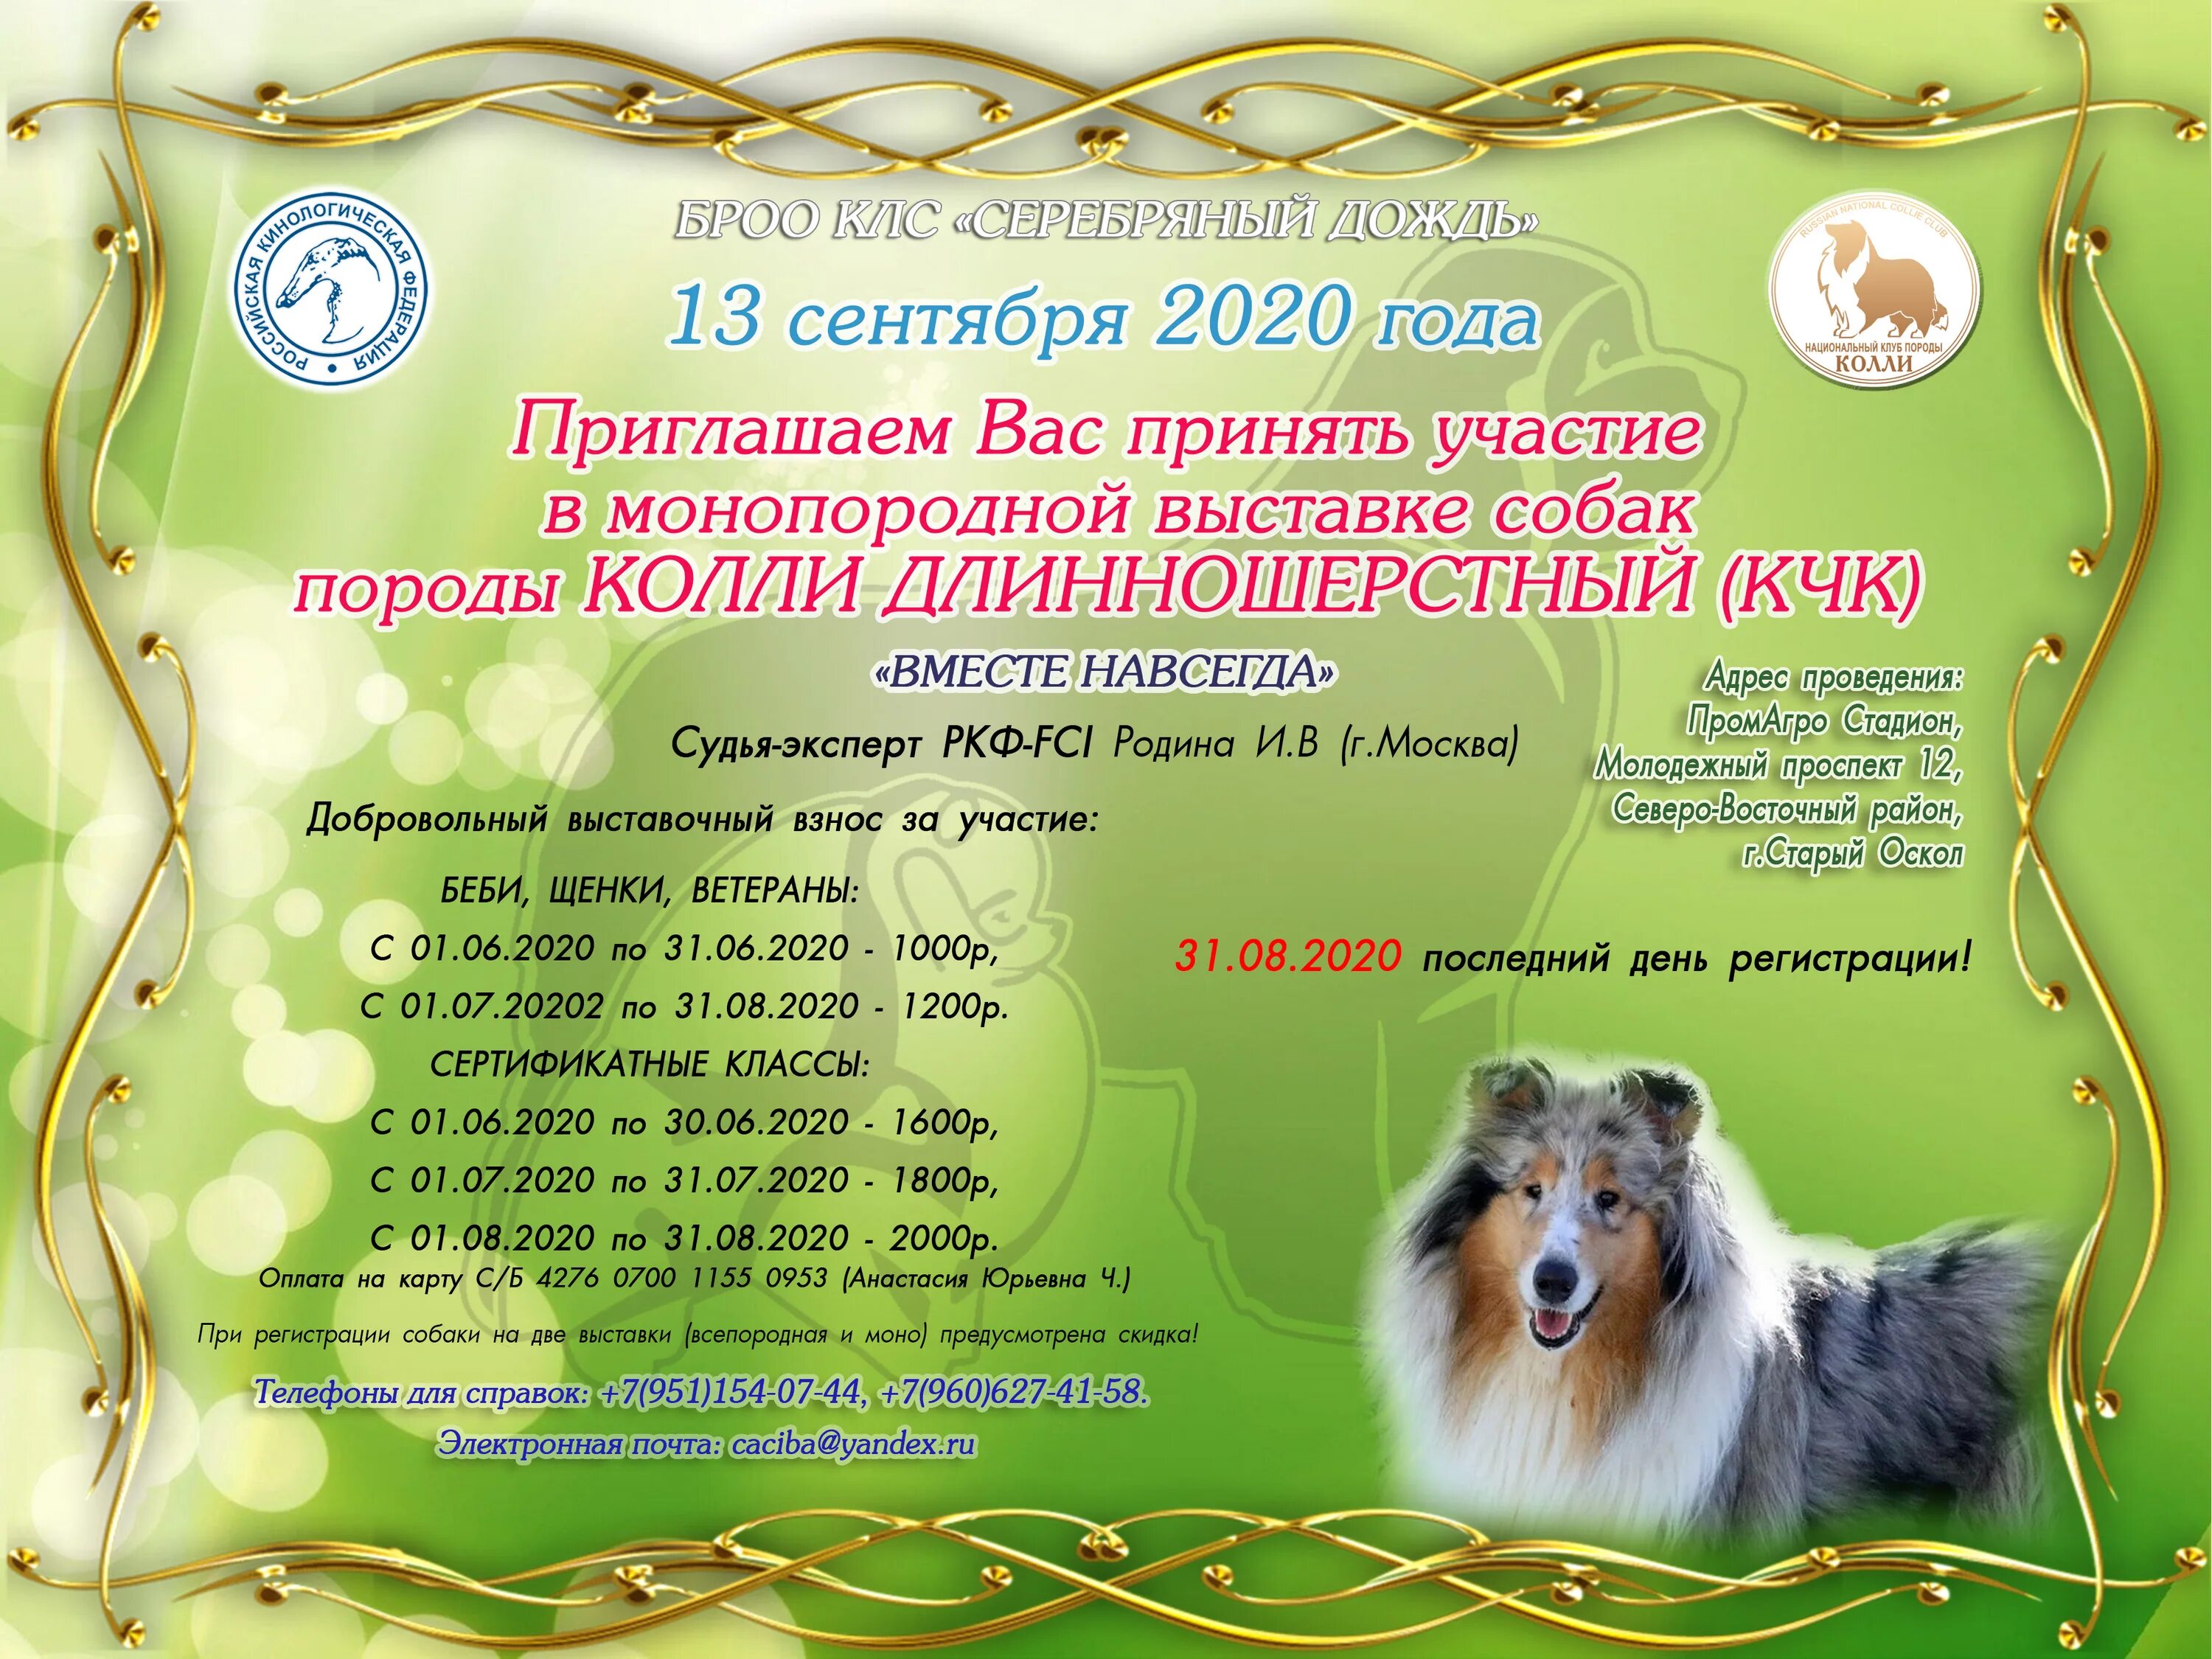 Выставки собак в москве в марте. Классы на выставках собак по возрасту РКФ. Титулы на монопородных выставках собак. КЧК на выставке собак что это. Клуб любителей собак.